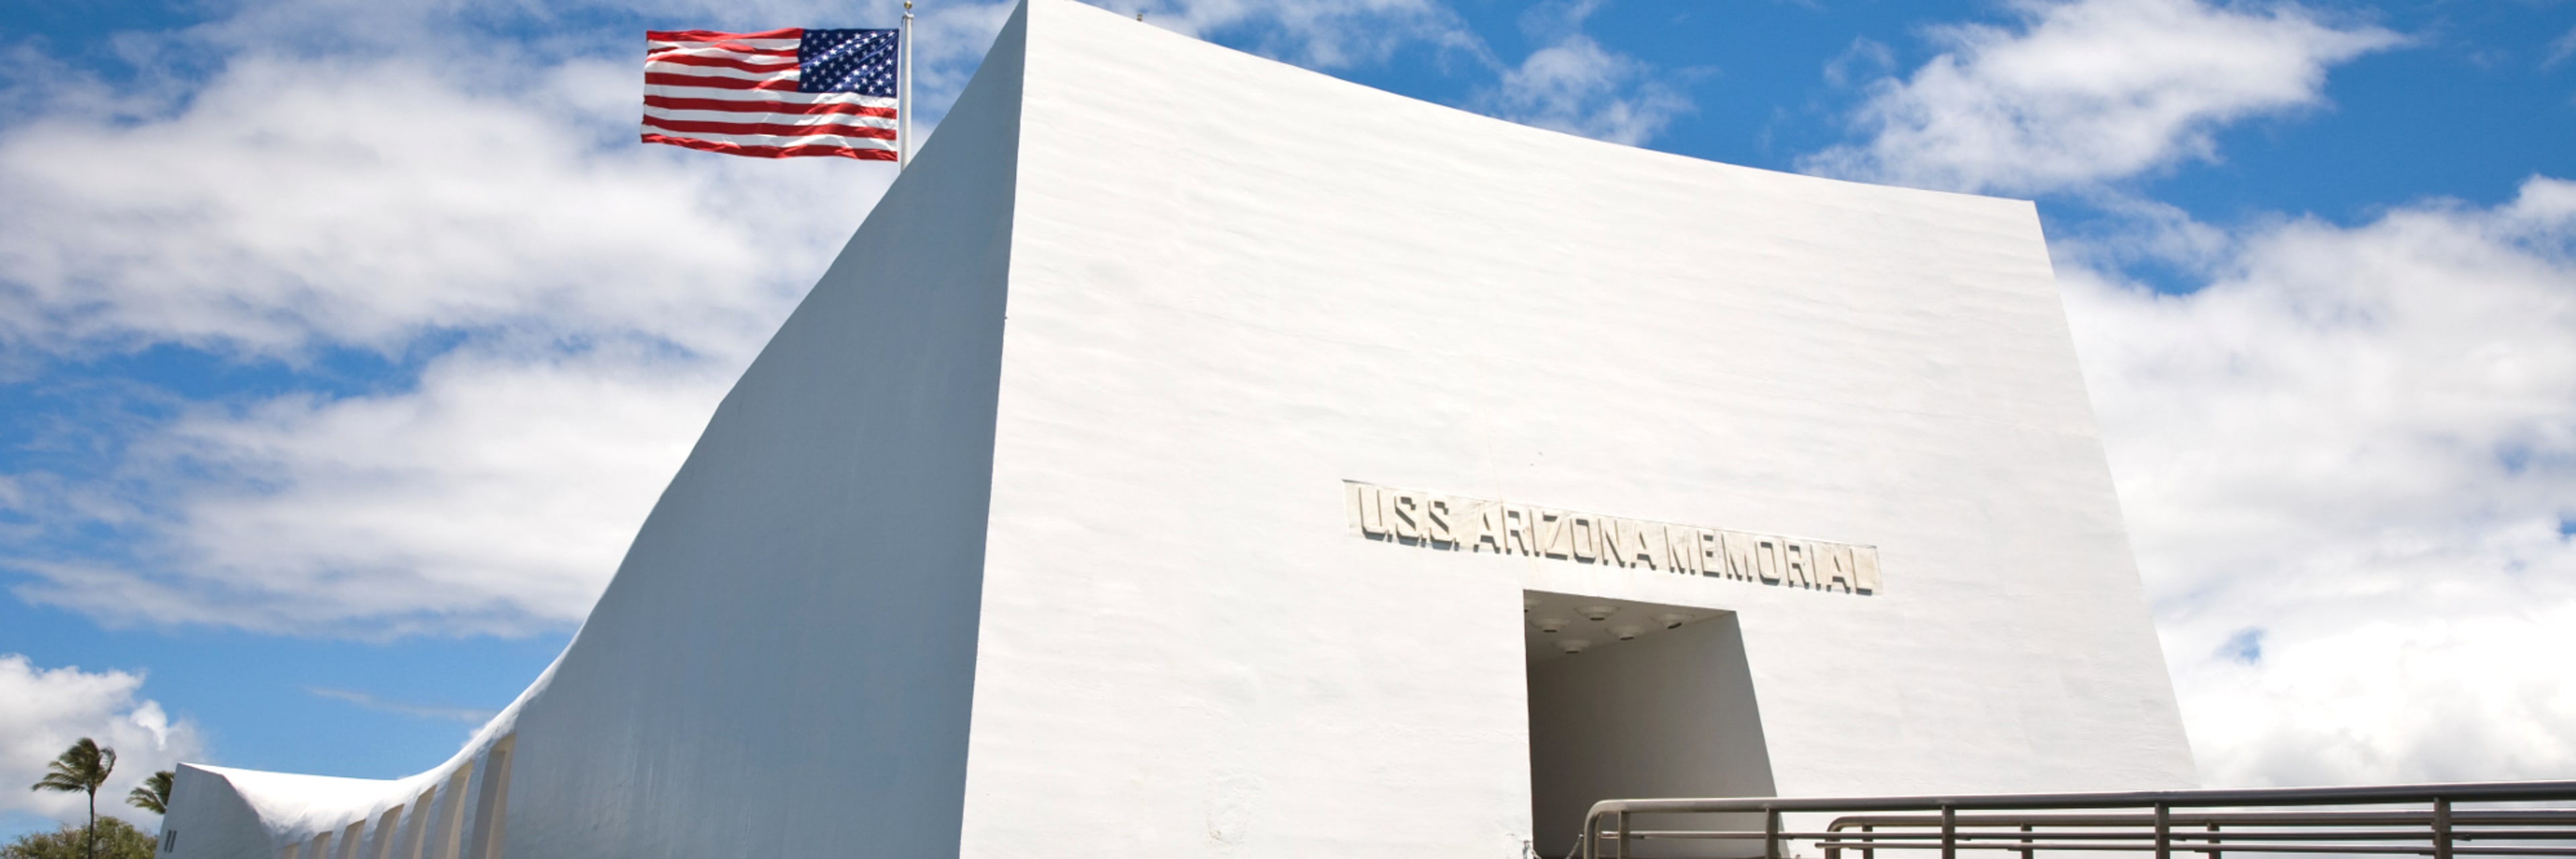 USS Arizona Memorial Narrated Tour at Pearl Harbor